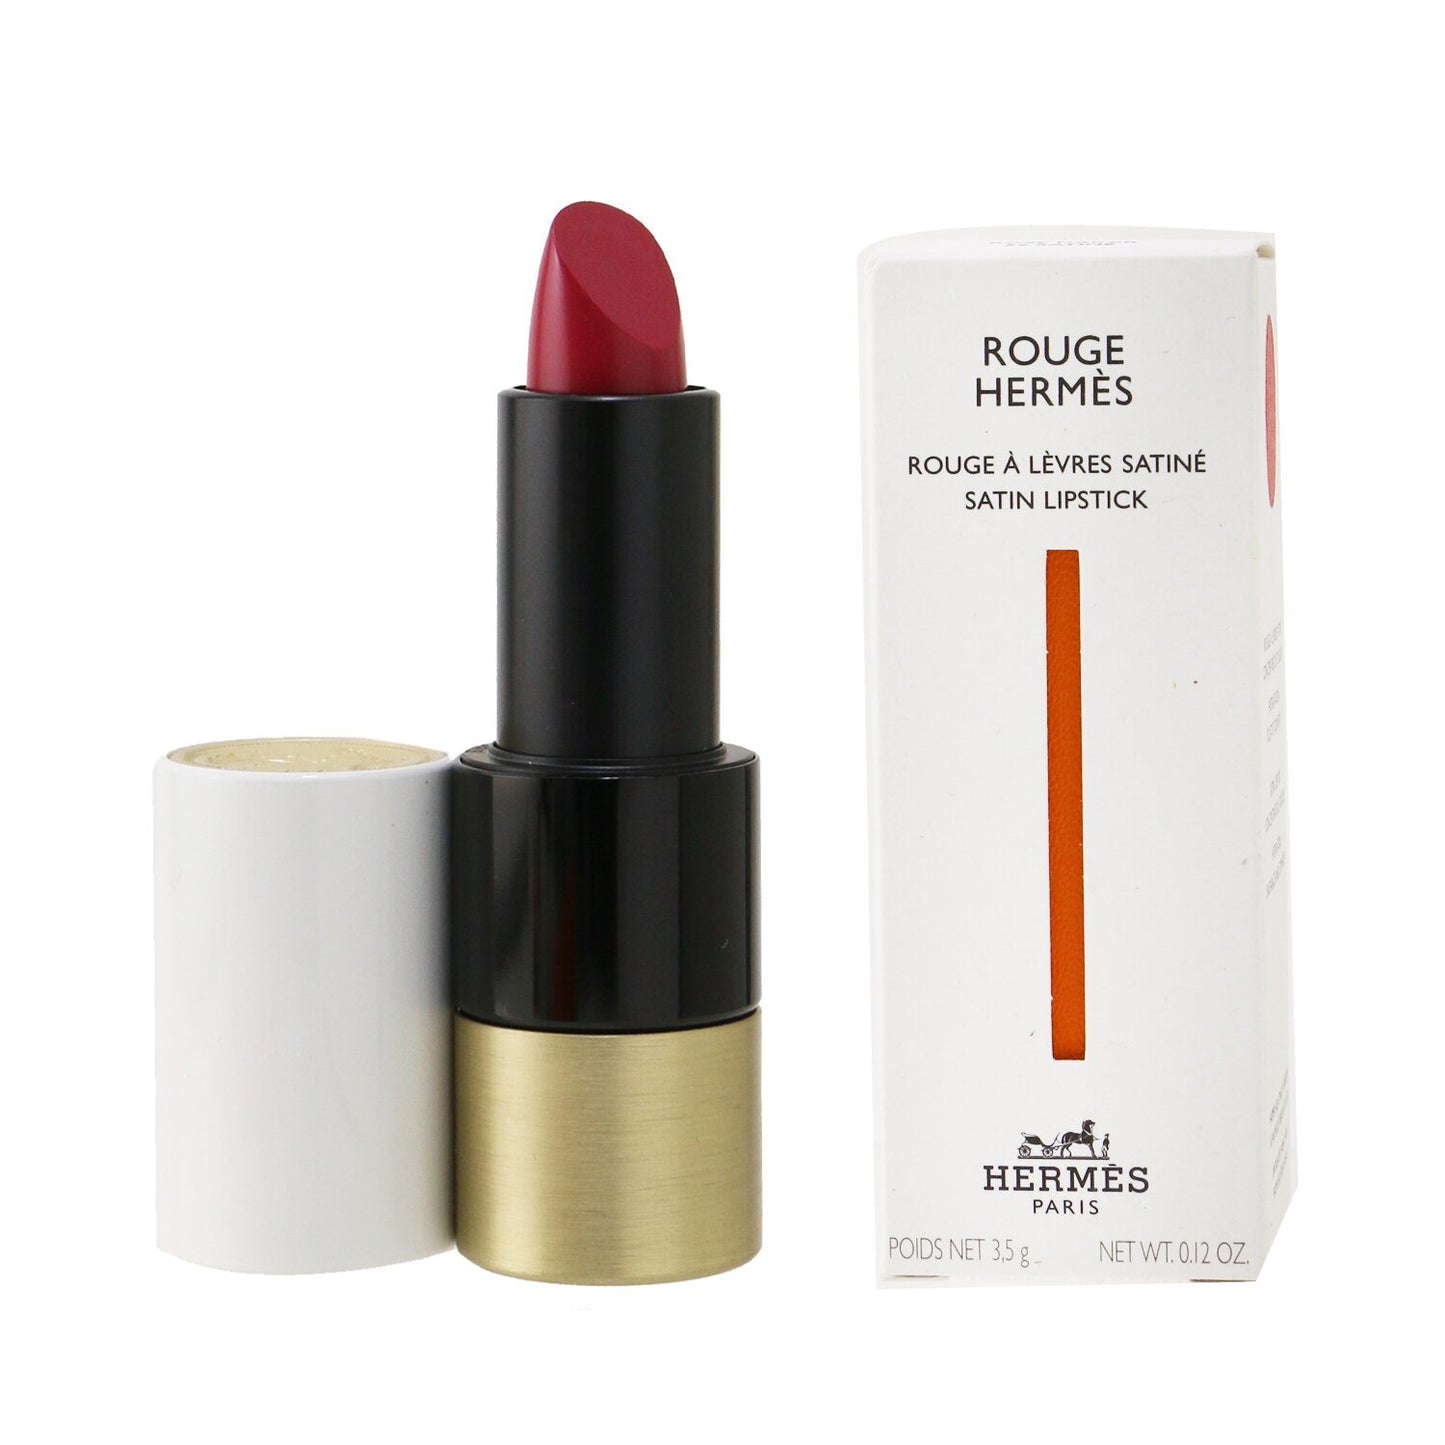 HERMES - Rouge Hermes Satin Lipstick - # 59 Rose Dakar (Satine) 3.5g/0.12oz